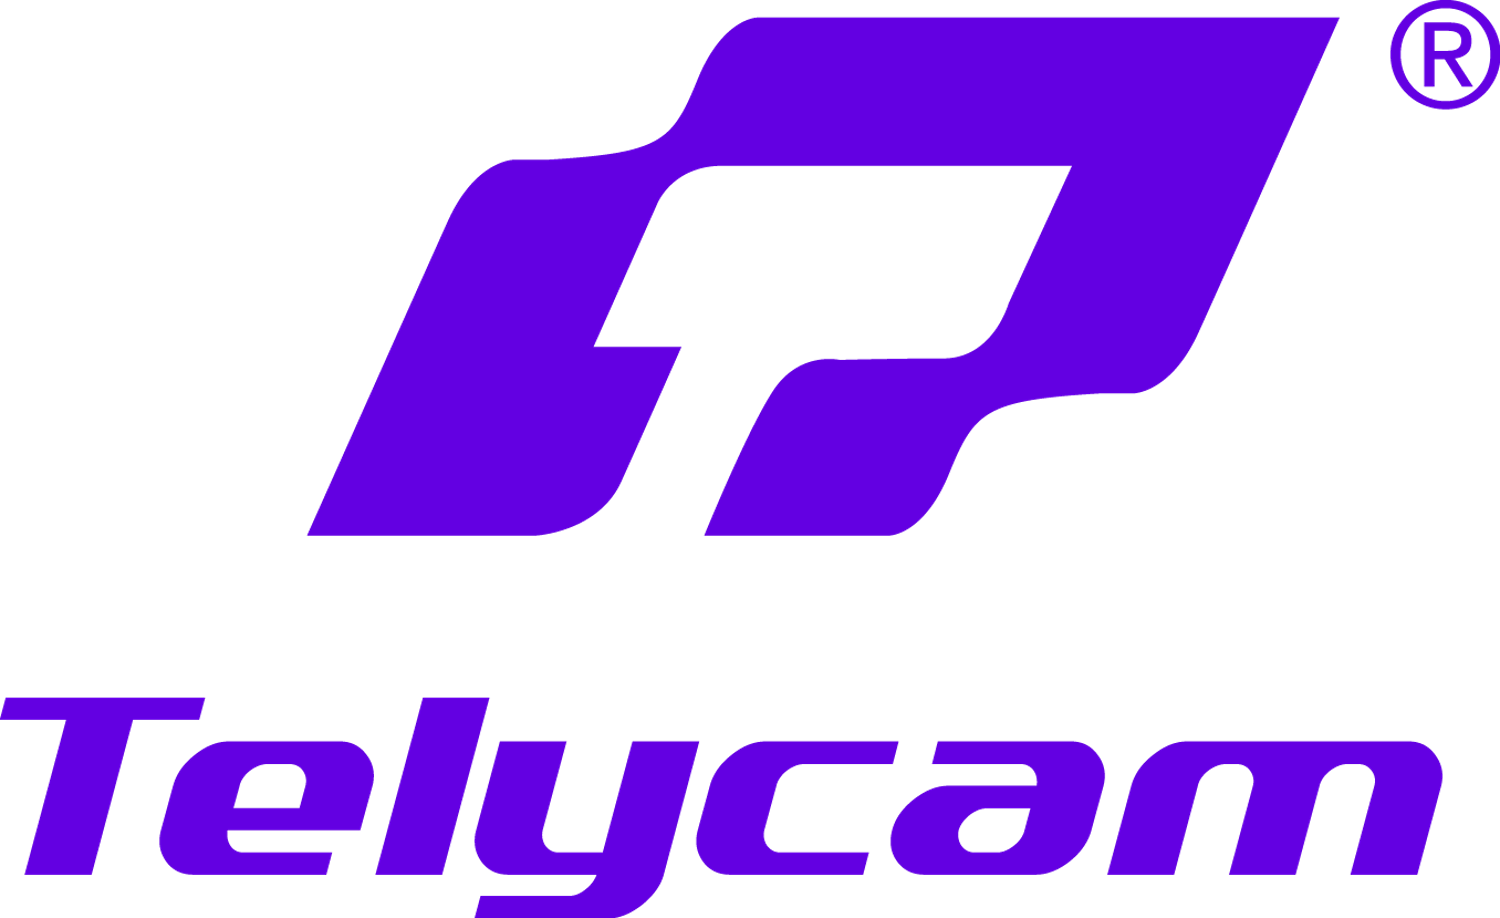 Telycam Pro AV PTZ camera